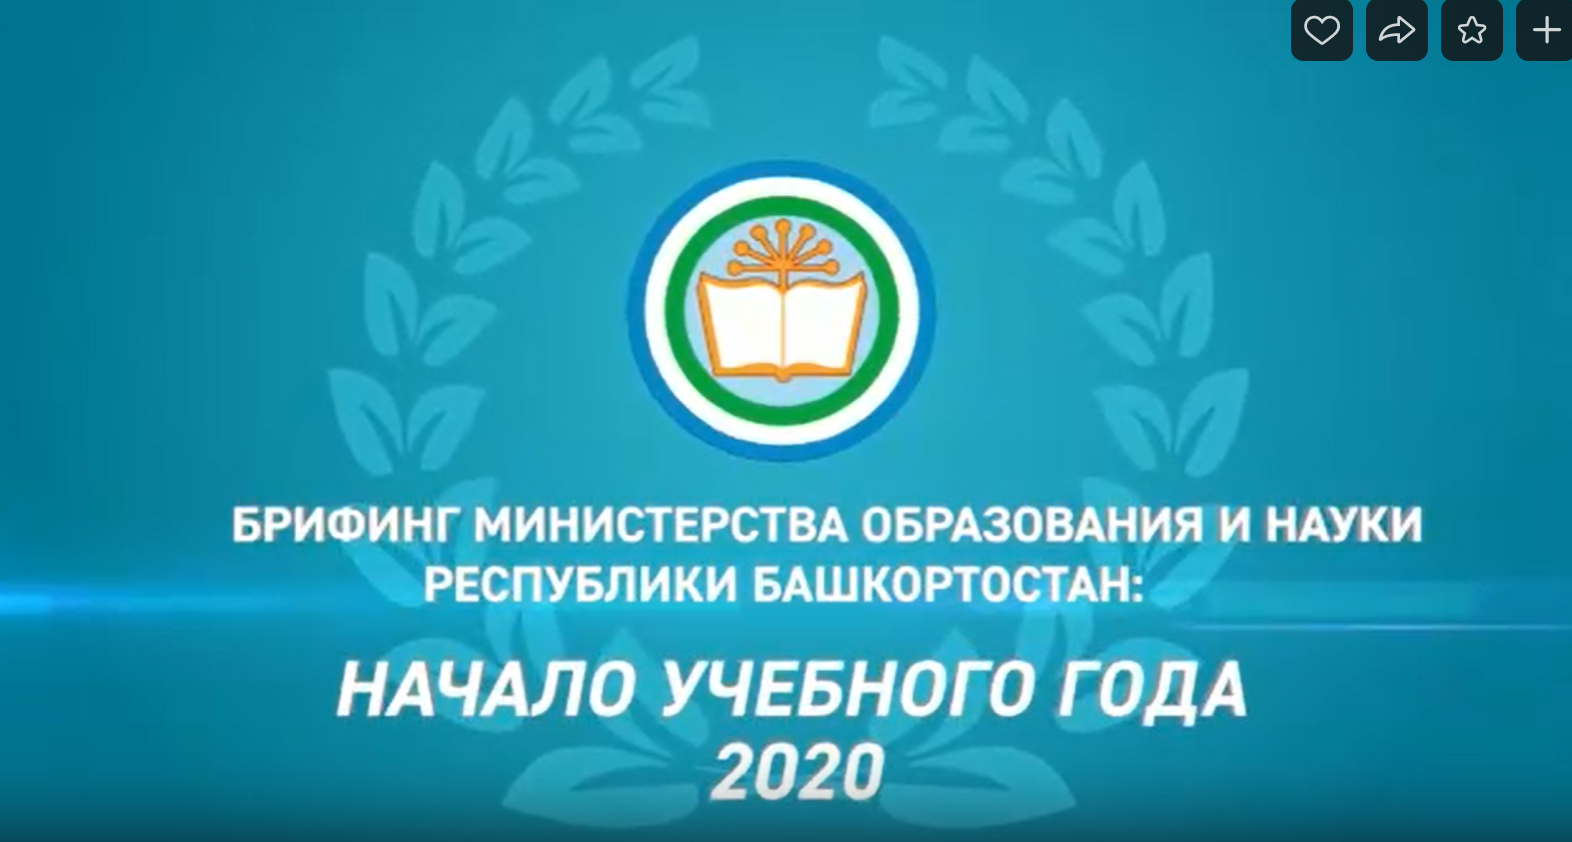 Завтра в Башкирии обсудят особенности нового учебного года